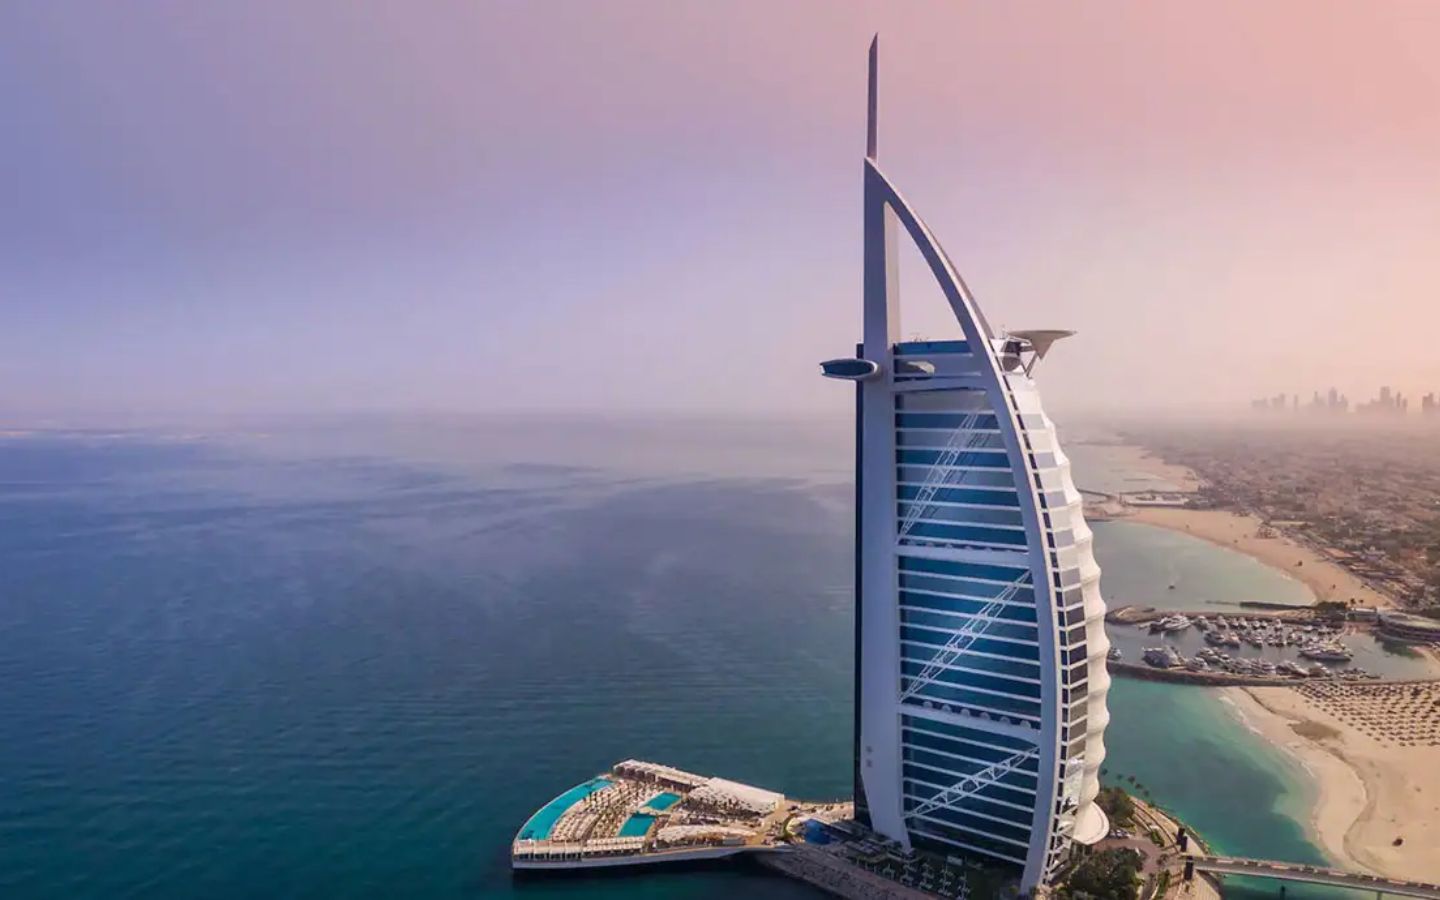 Temukan Lima Fakta Menarik Tentang Burj Al Arab